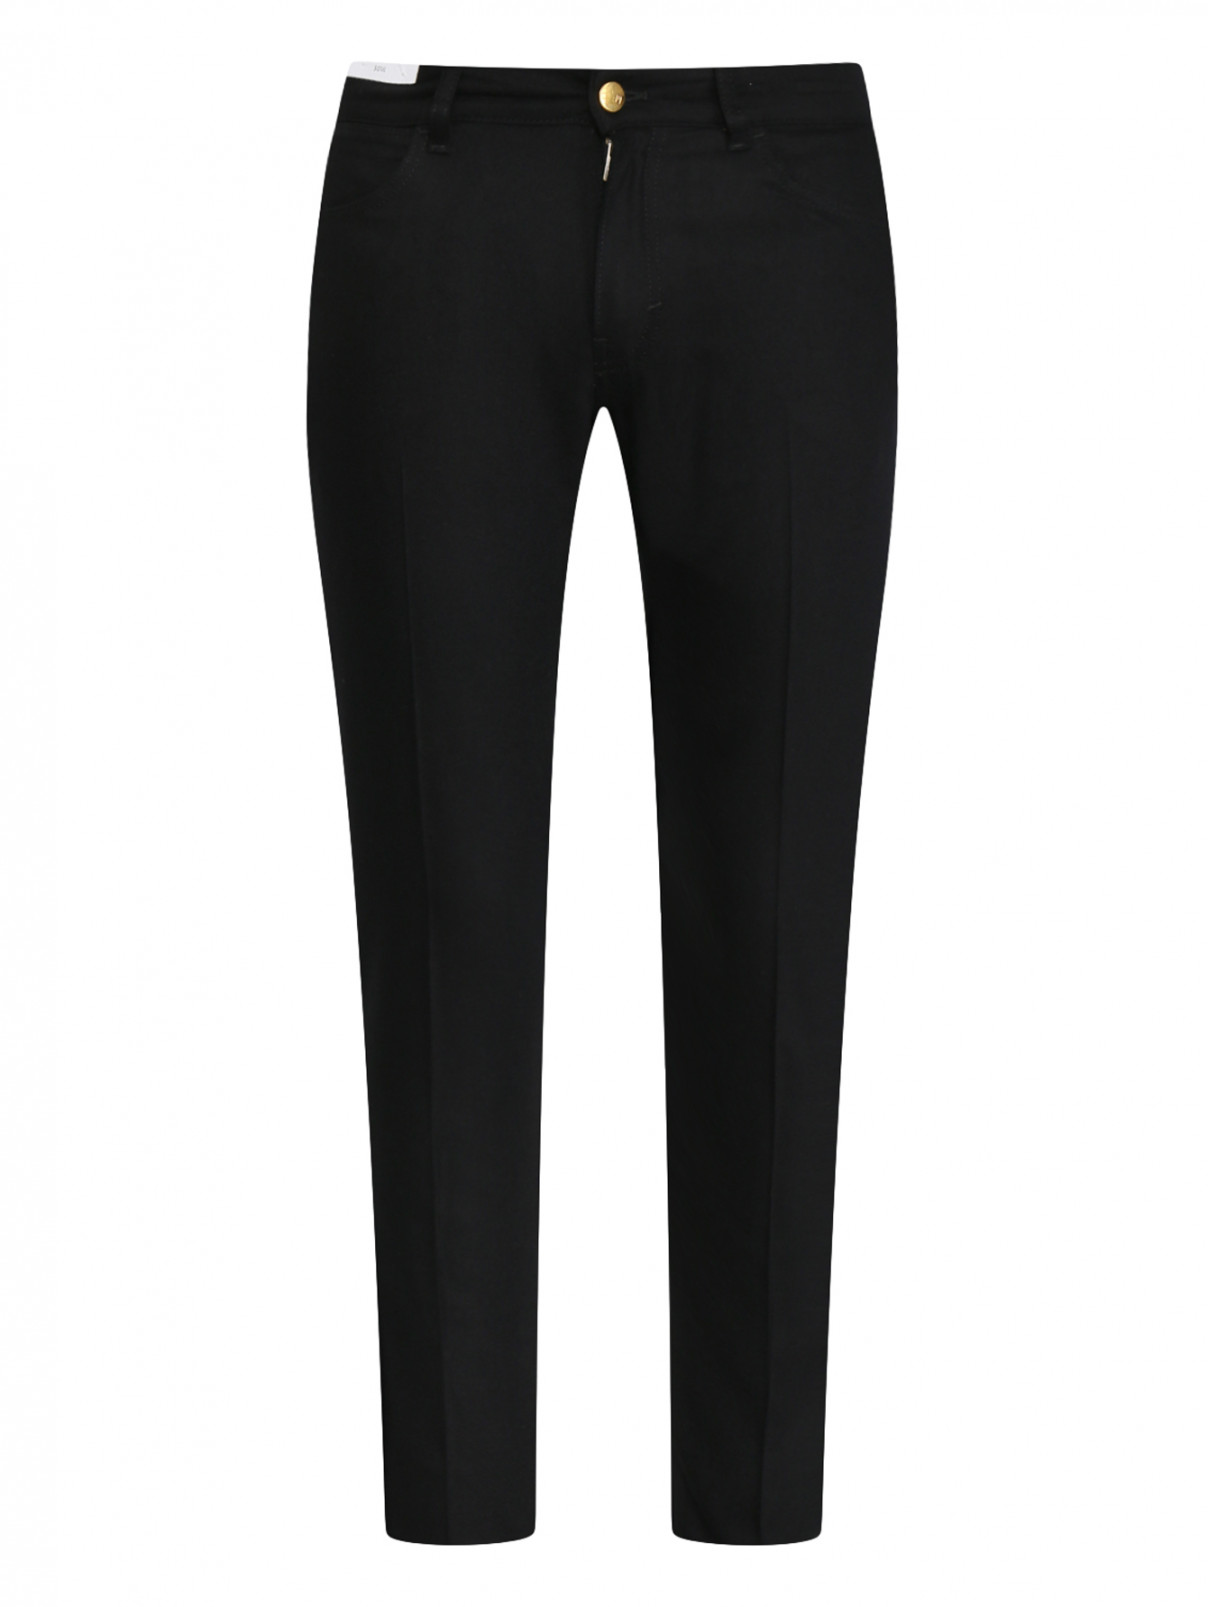 Однотонные брюки из шерсти PT Torino  –  Общий вид  – Цвет:  Черный